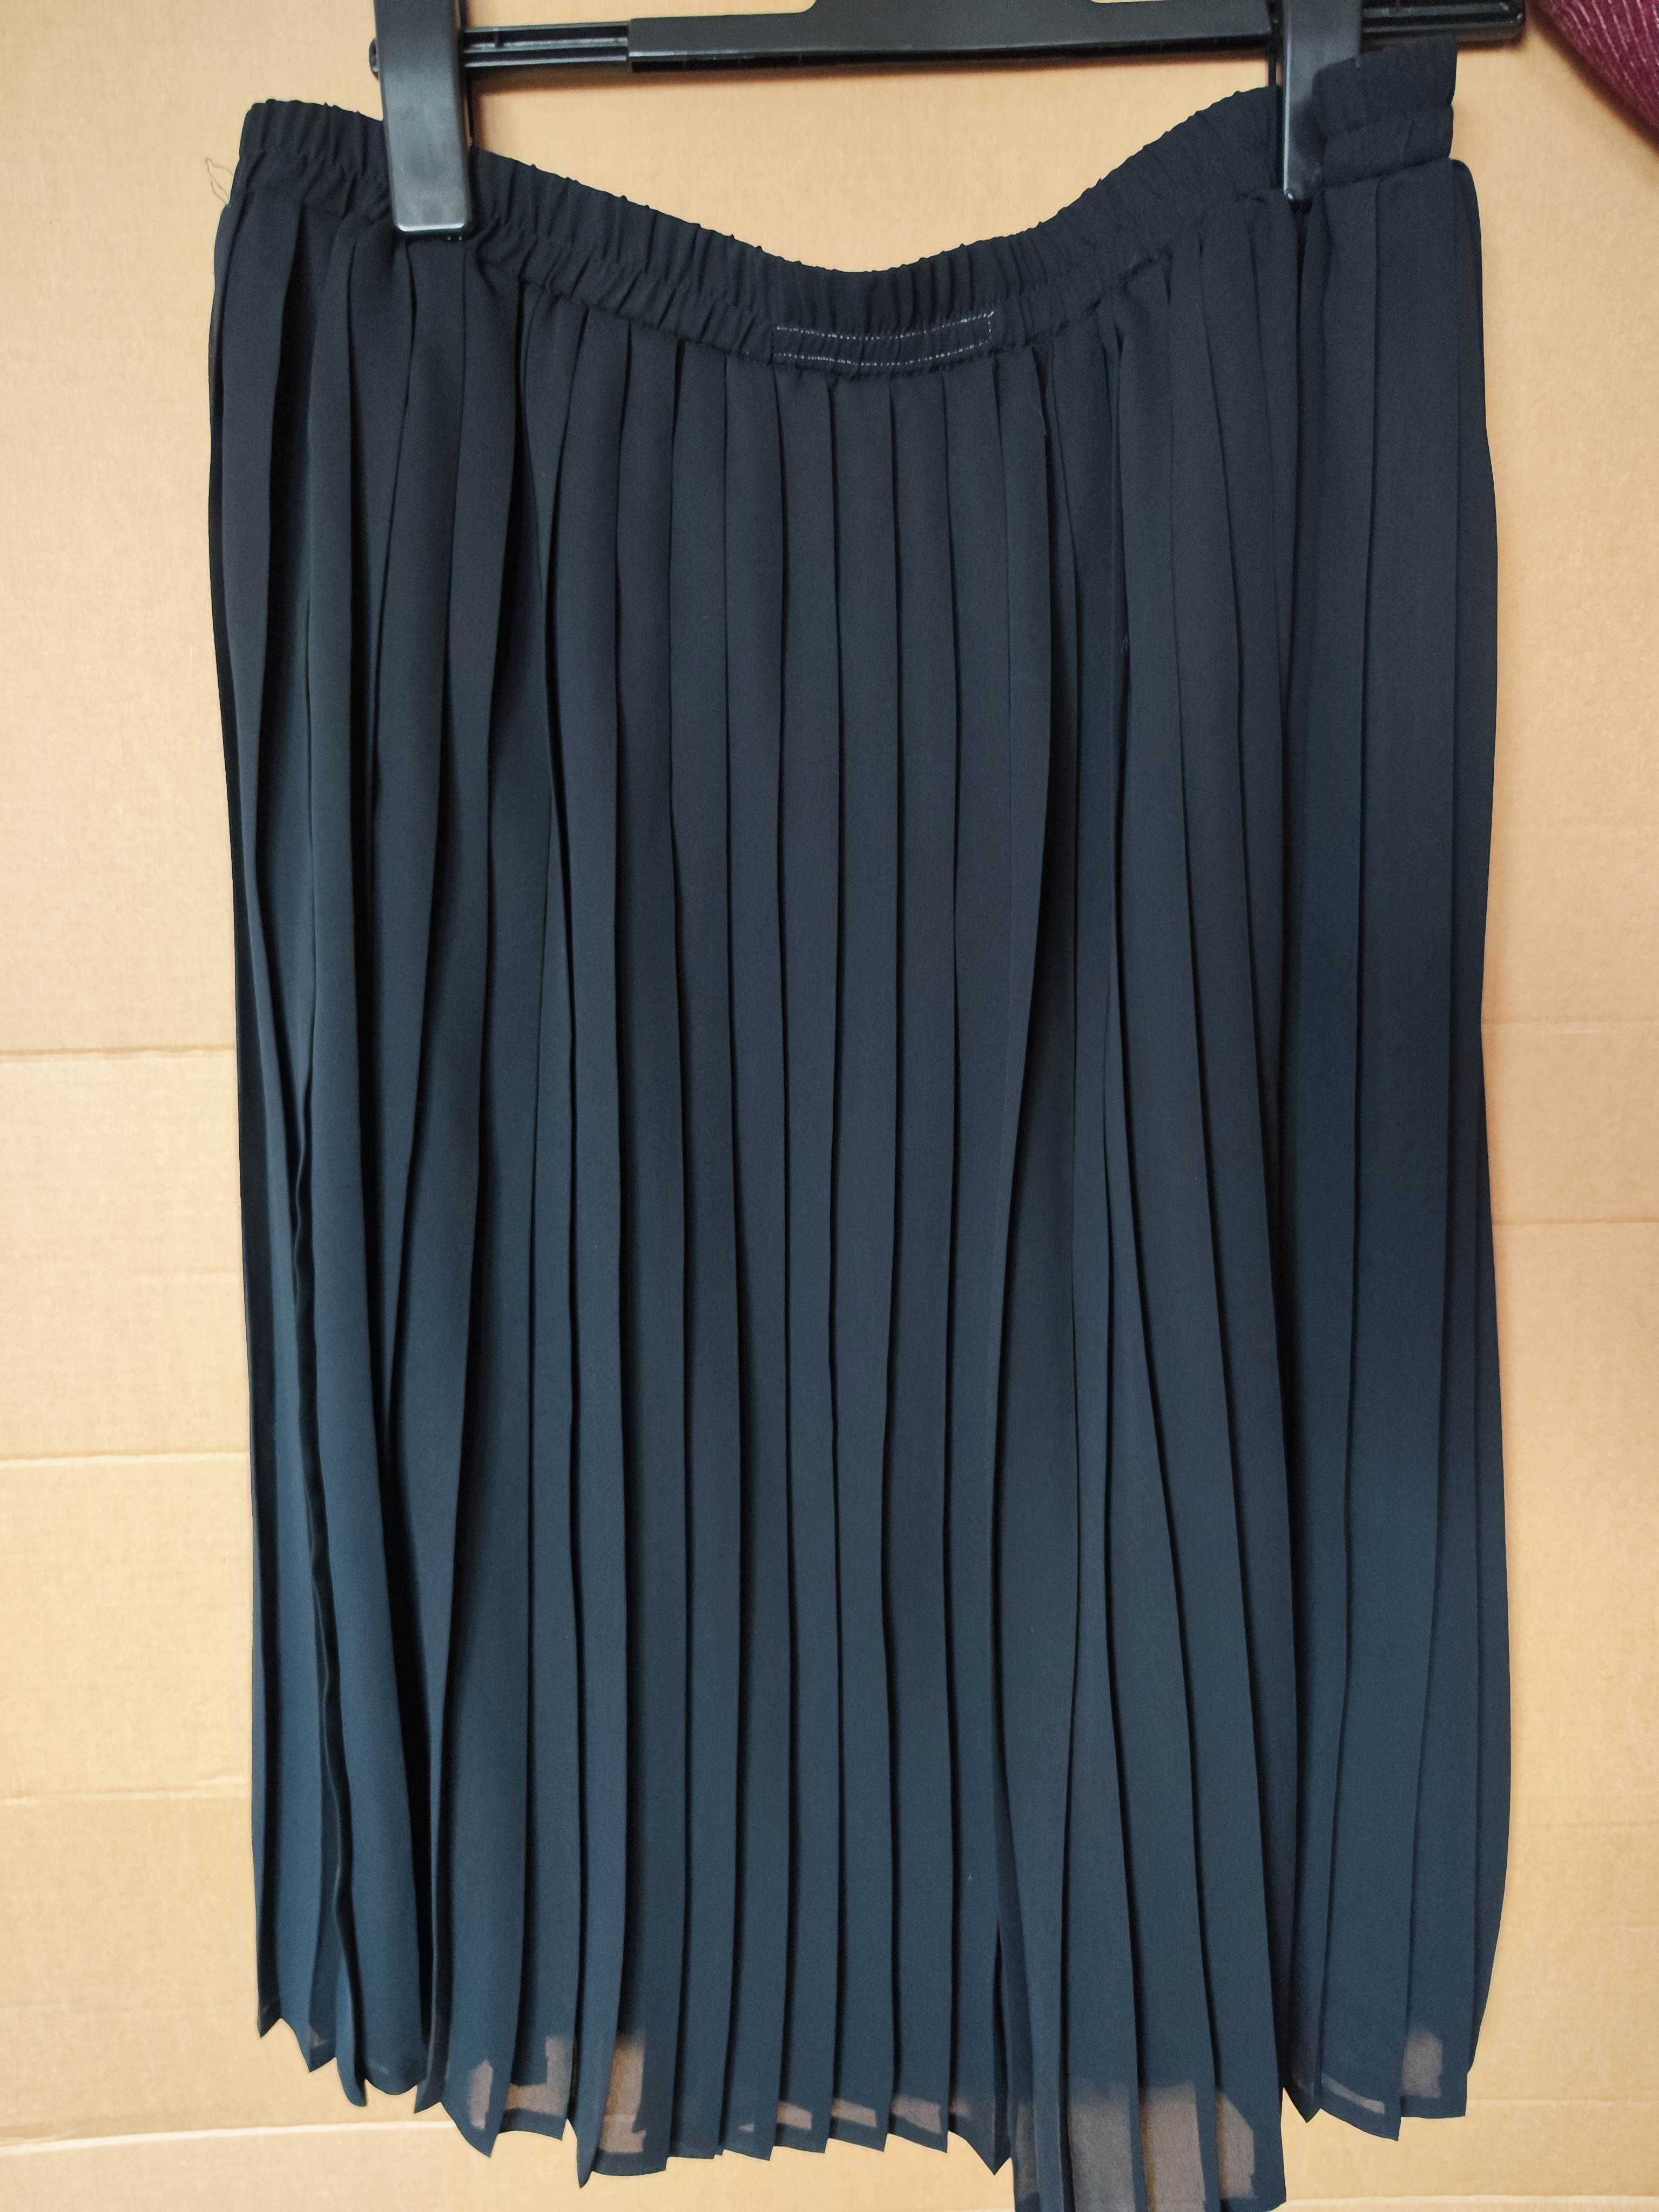 Czarna sukienka Zara spódnica garnitur garsonka żakiet bluzka marynark